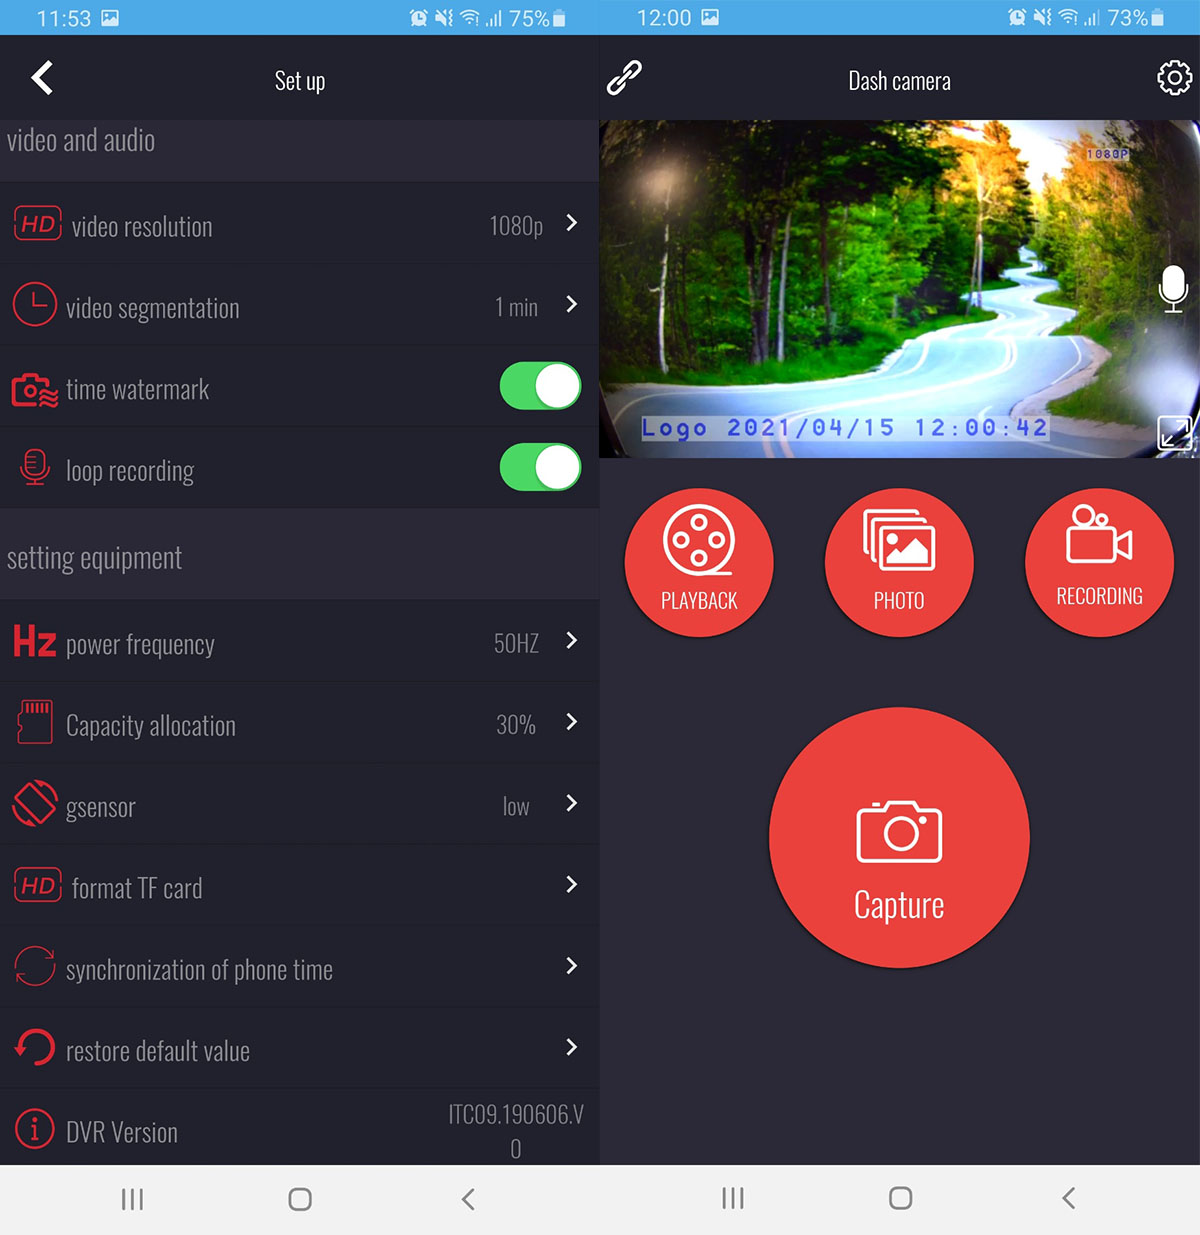 Profio S13 live tracking app